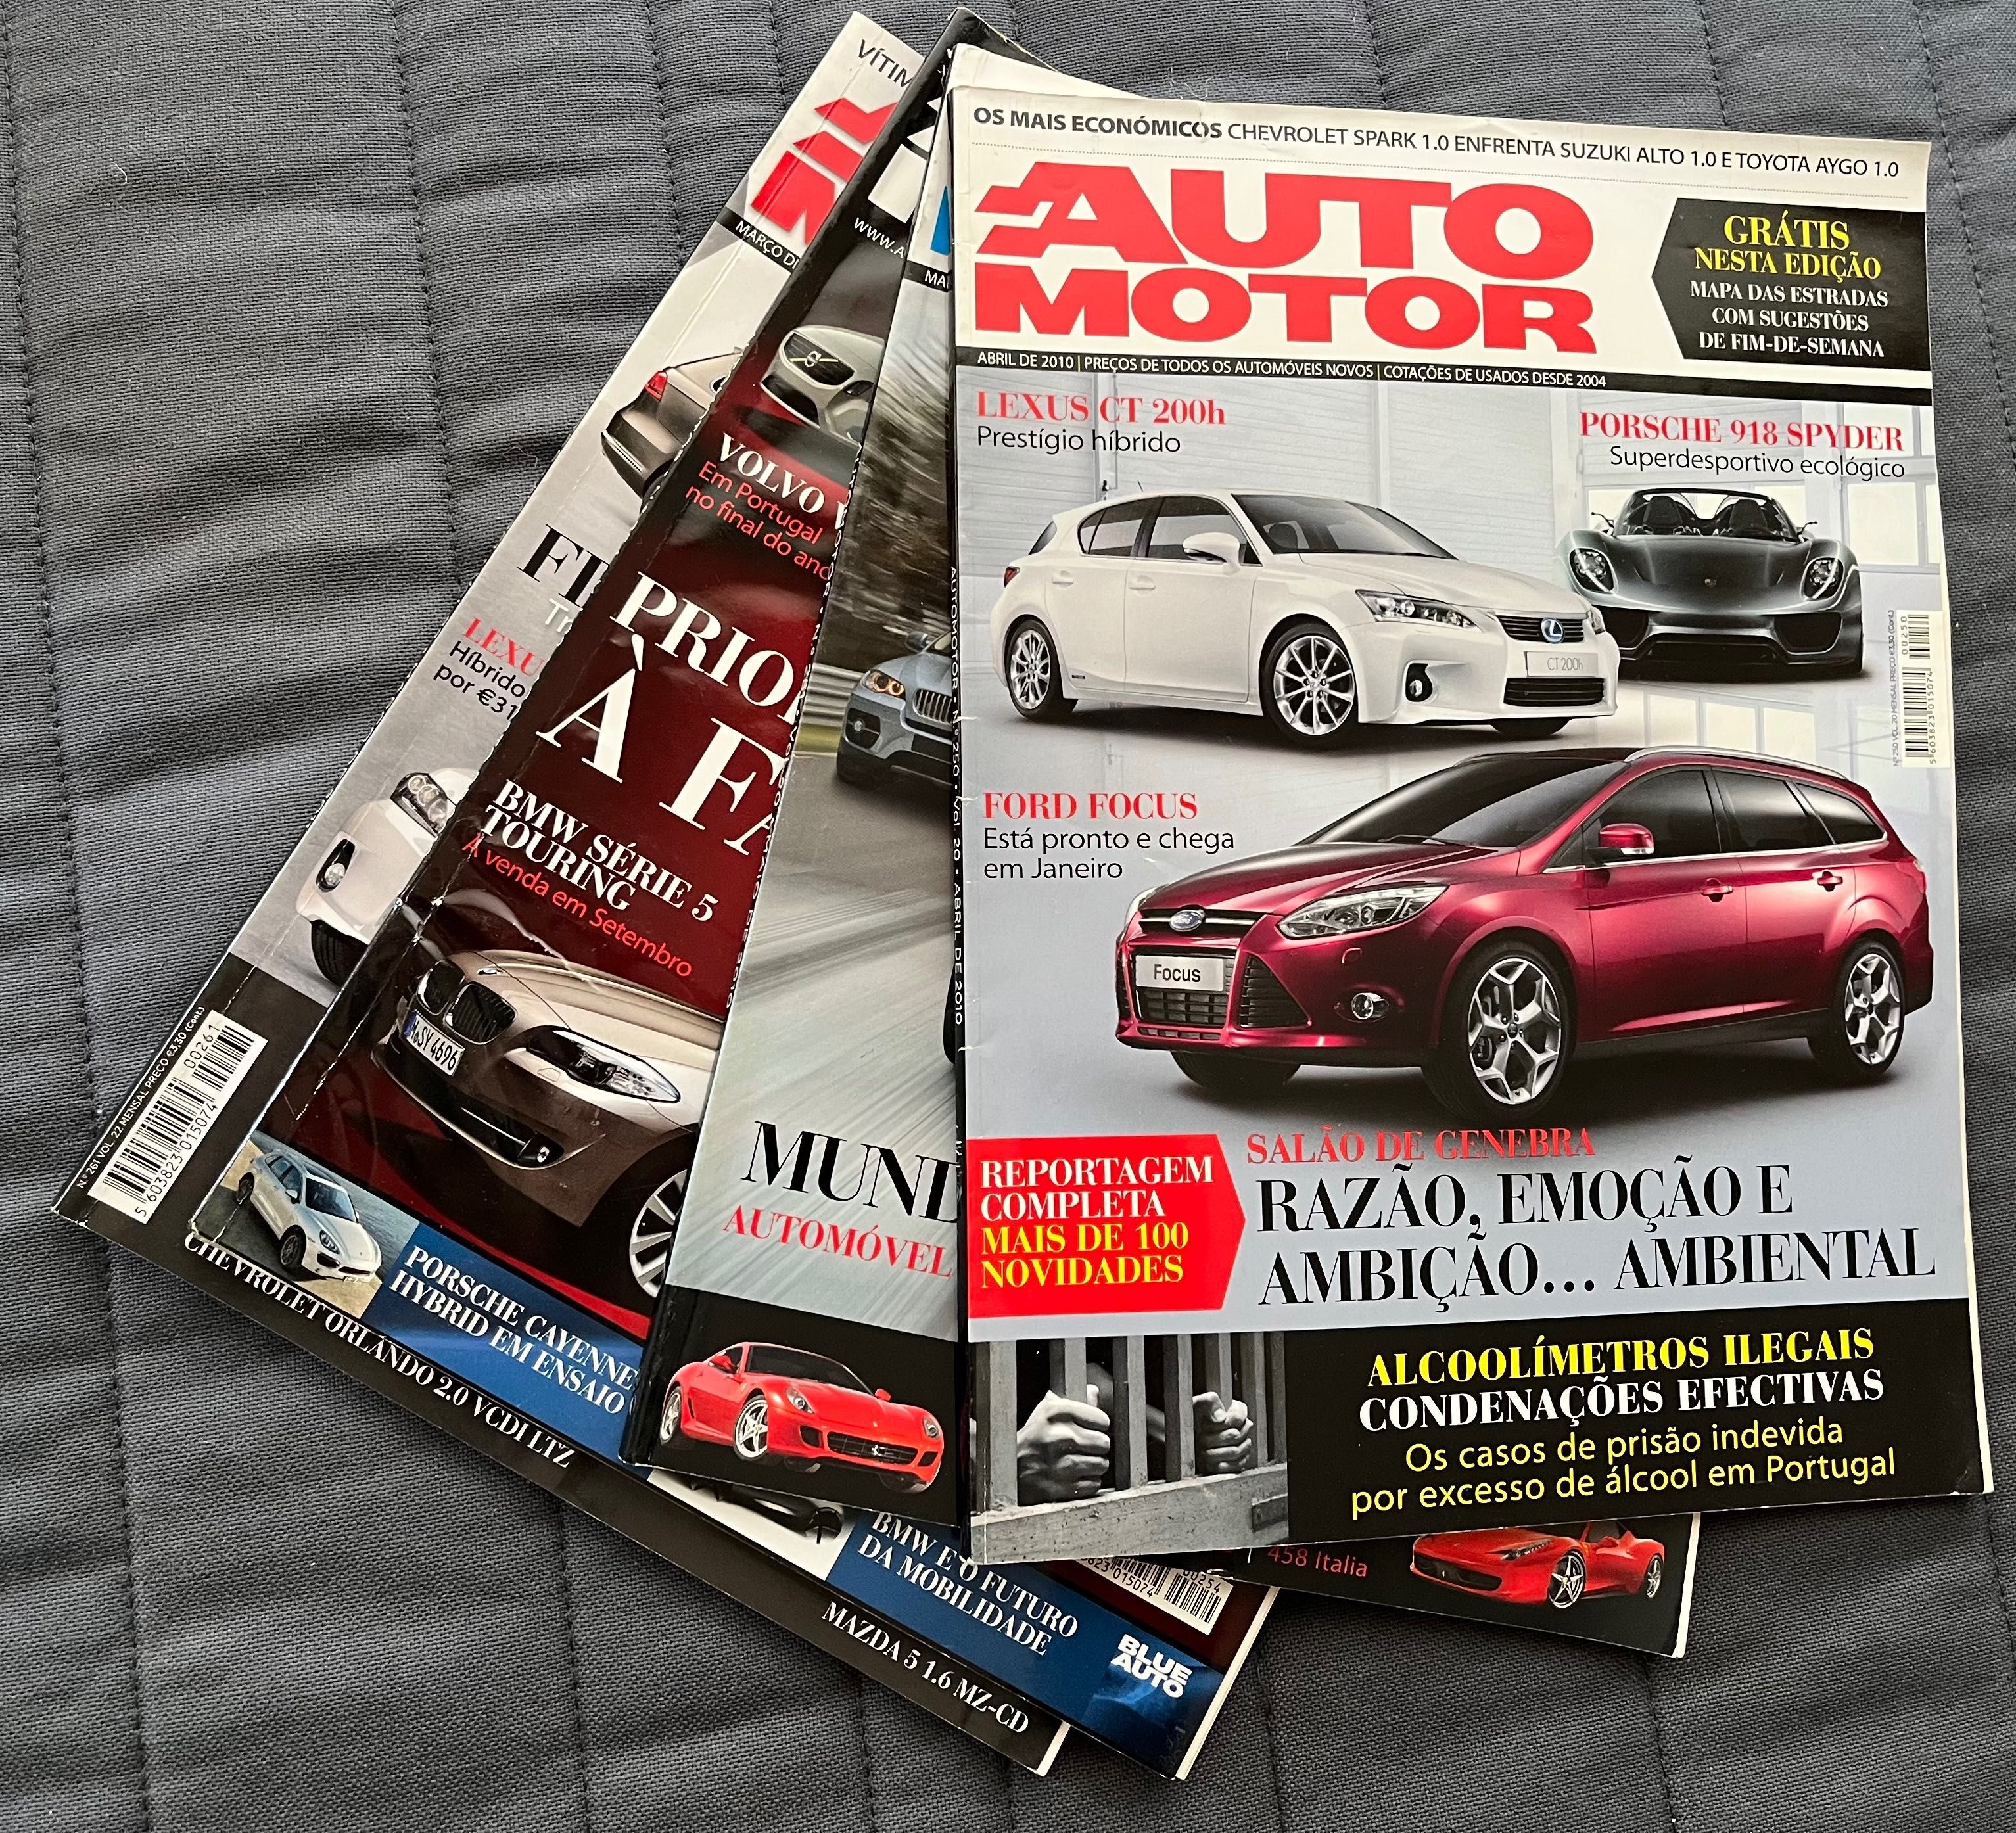 Lote de revistas Automotor em bom estado